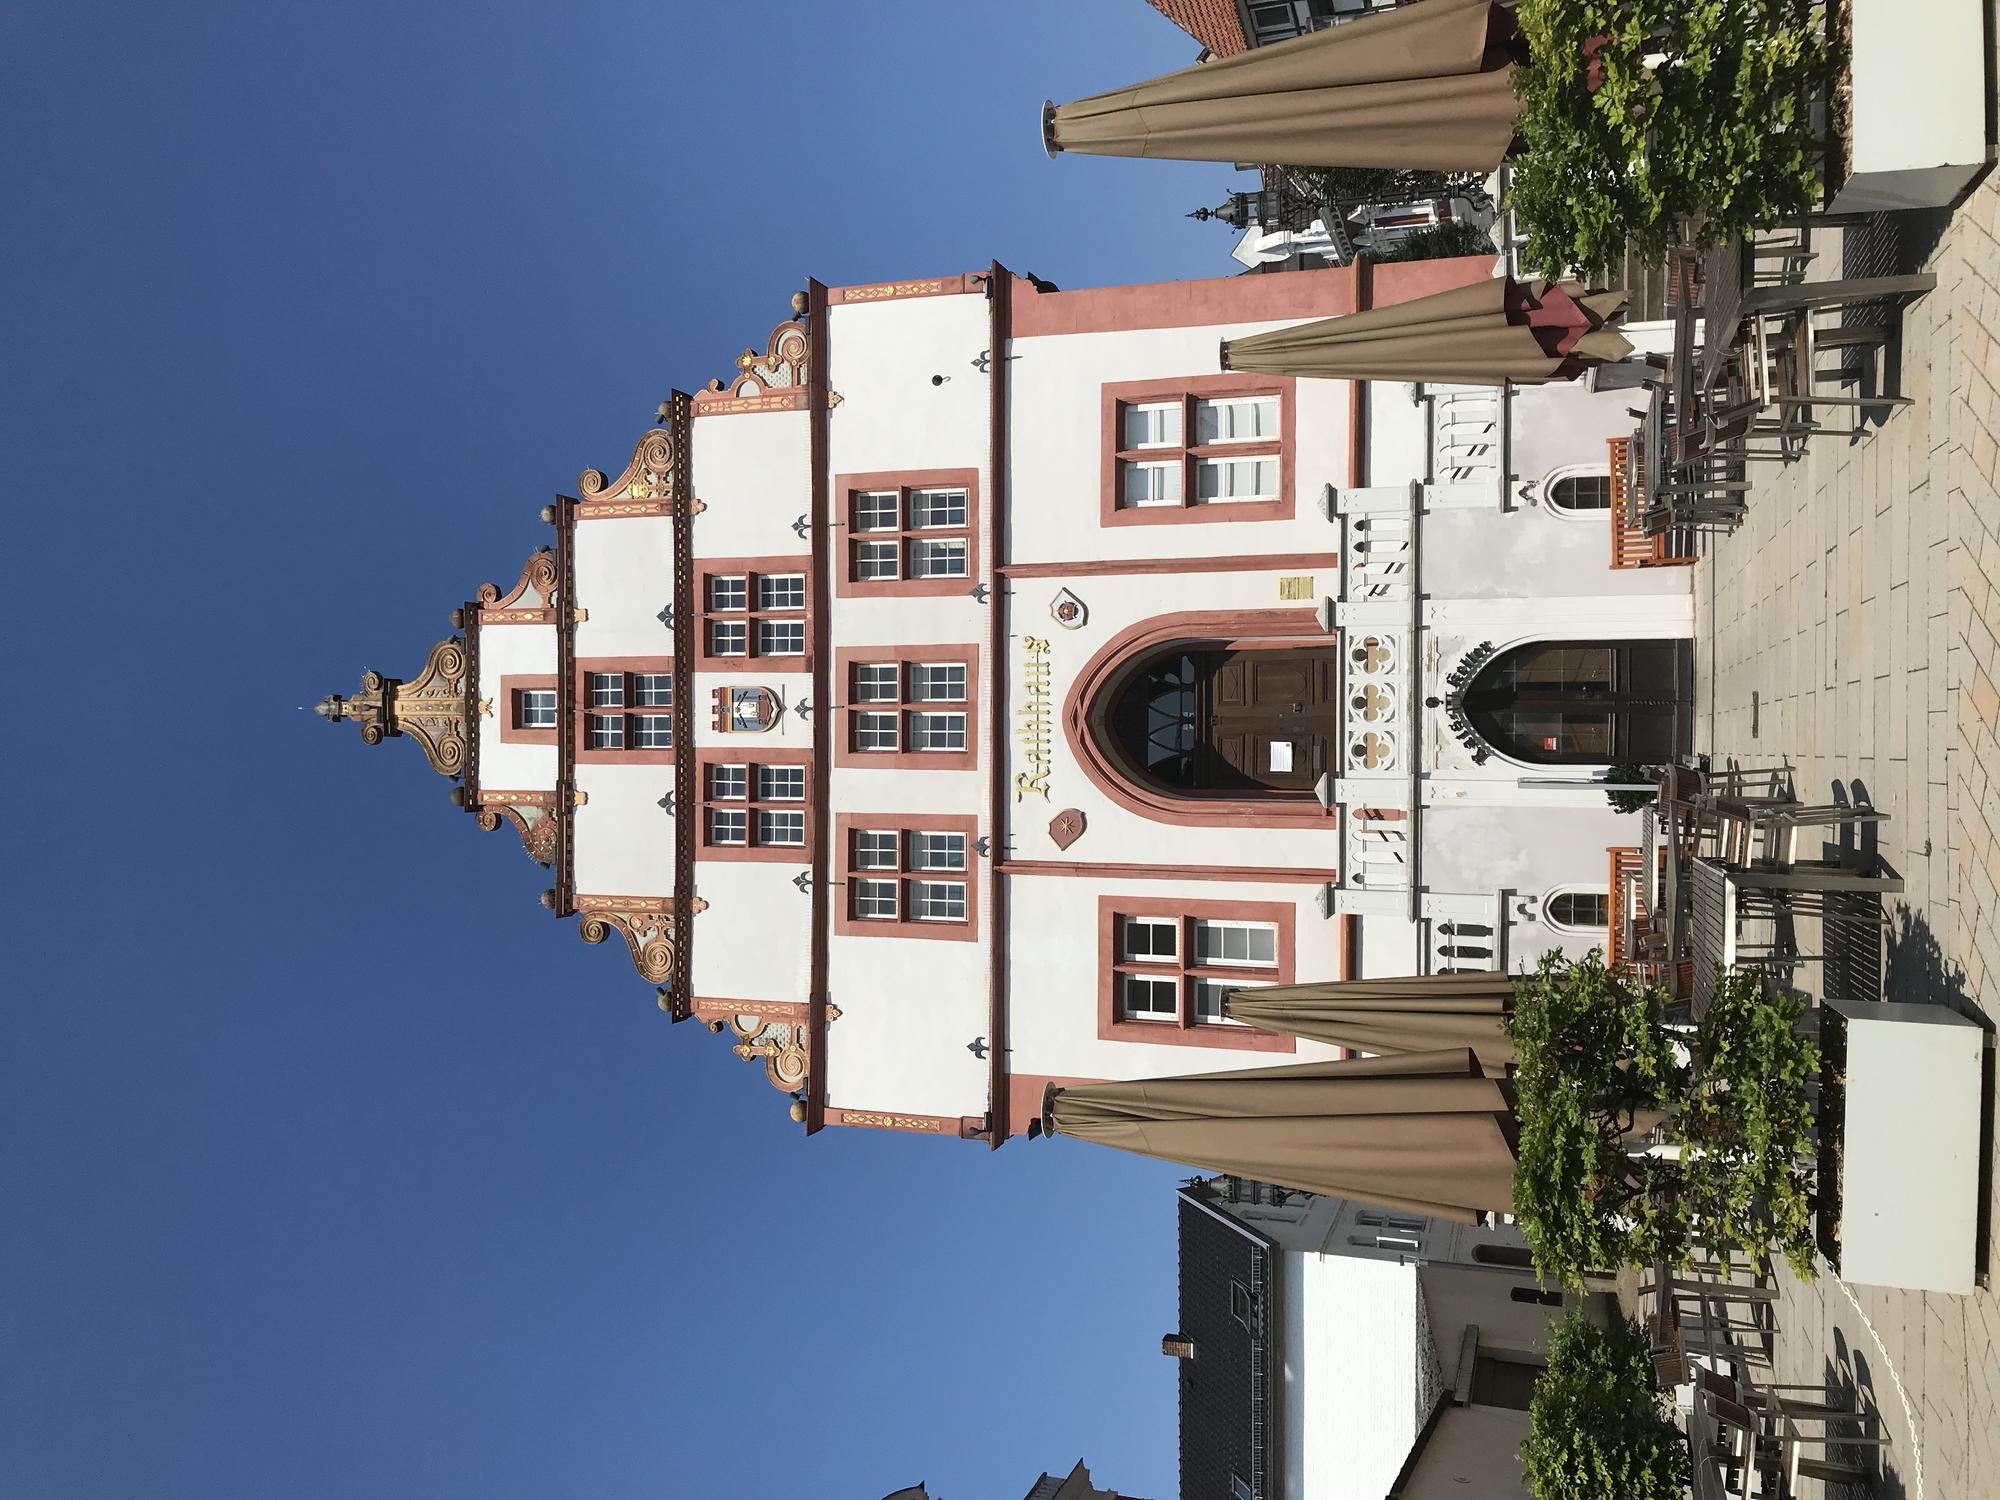 Town Hall Bad Salzuflen